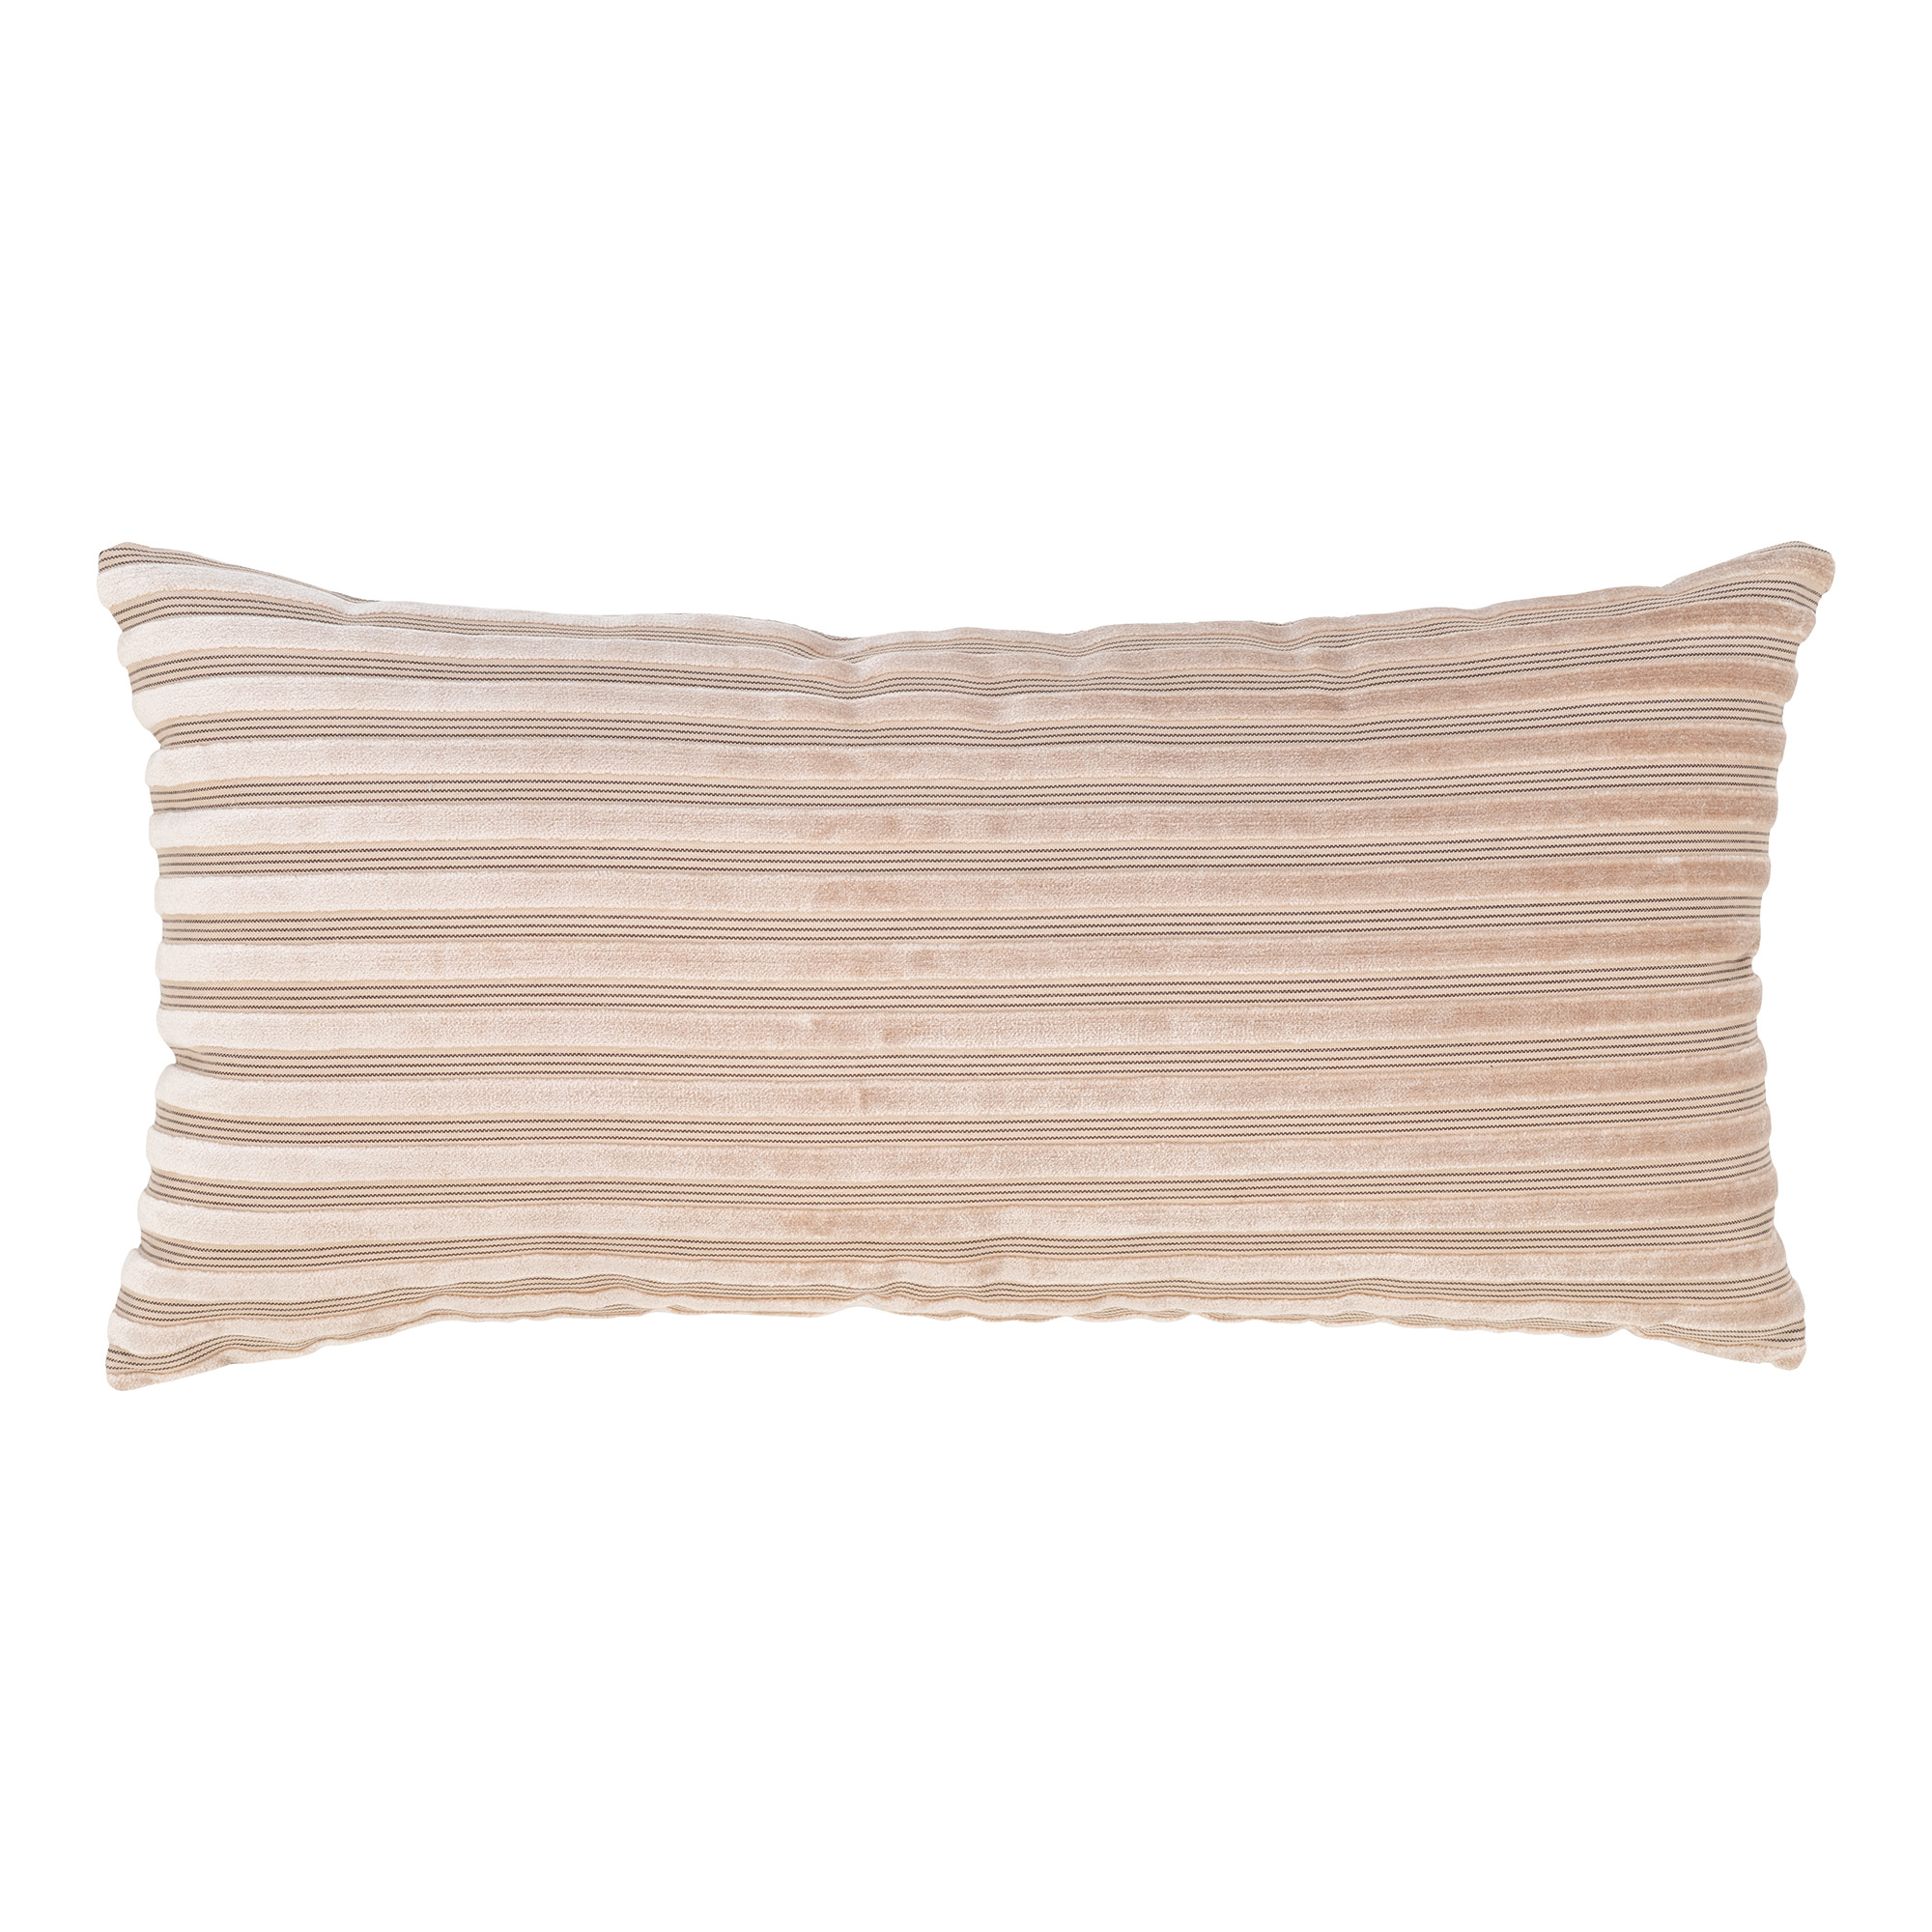 Billede af HOUSE NORDIC Alburry pude, rektangulær - beige viskose/polyester stof (30x60)